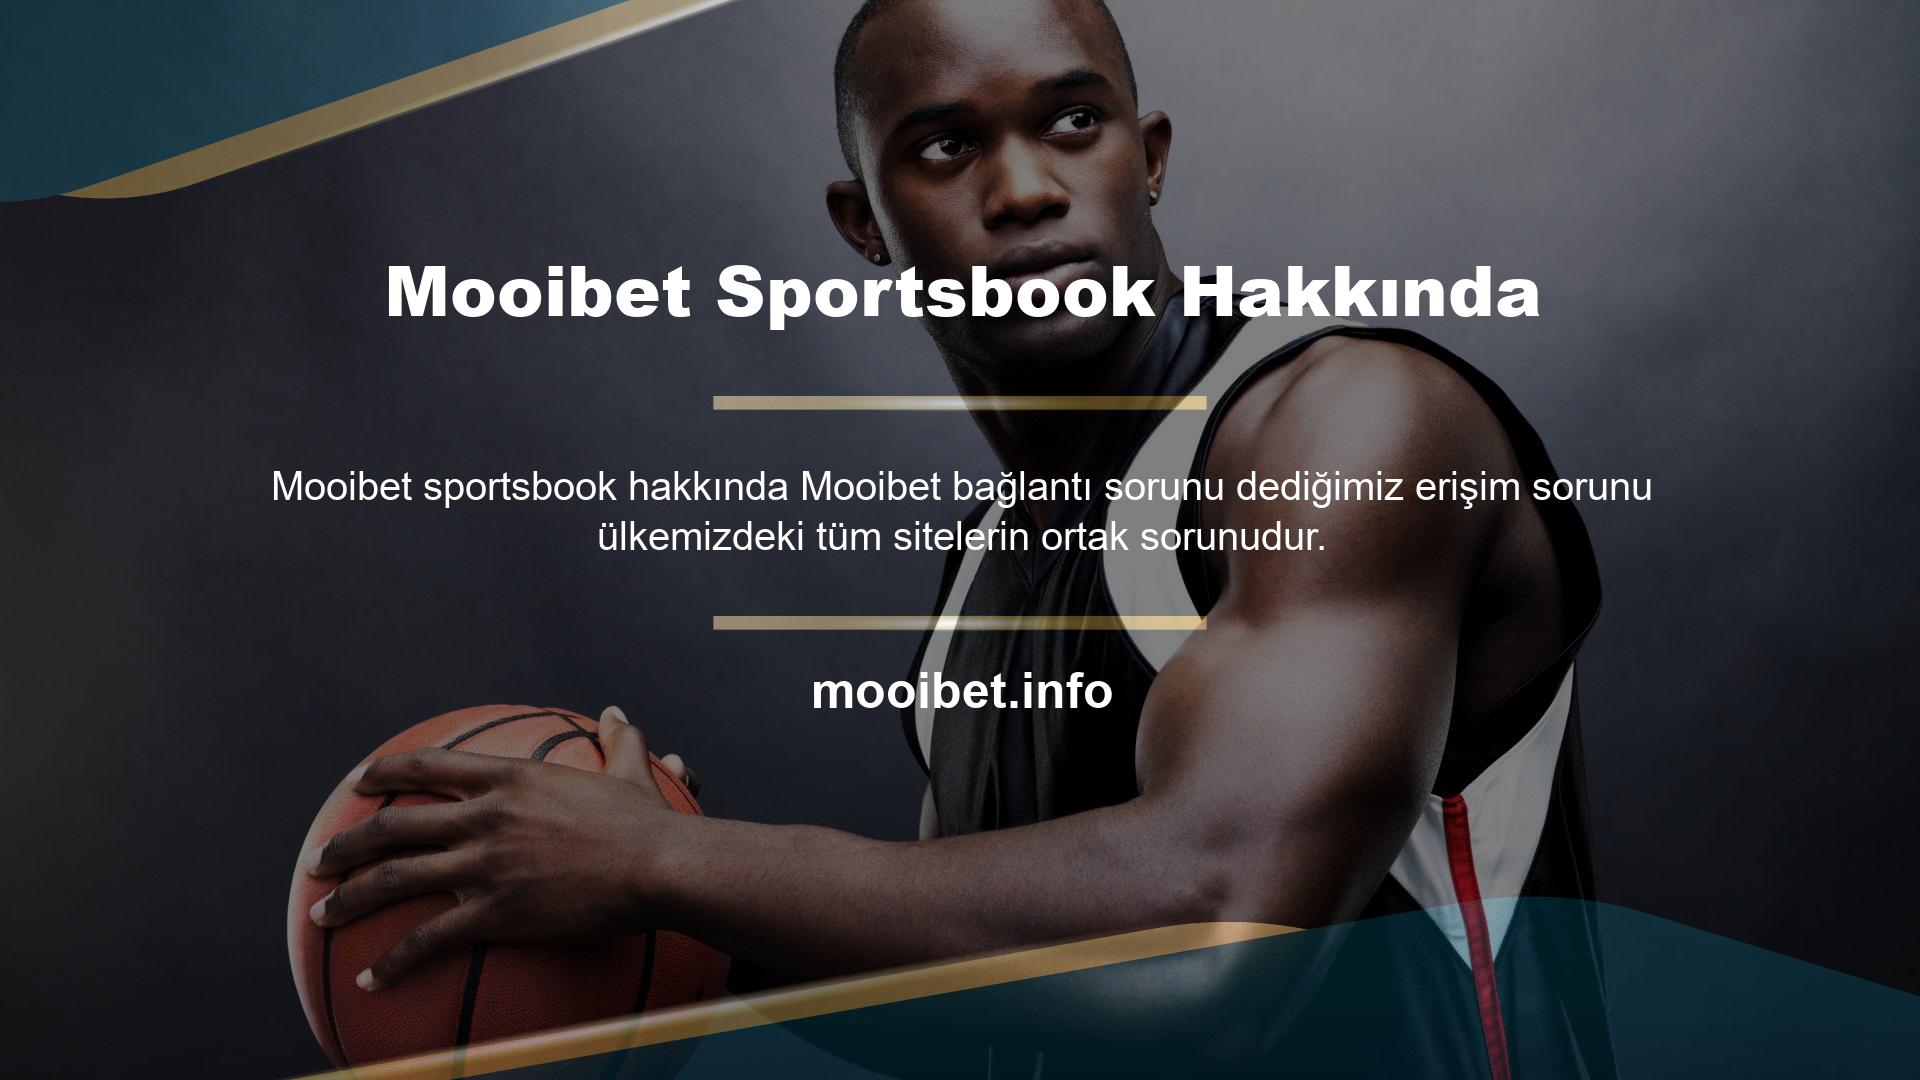 Mooibet Sportsbook Hakkında